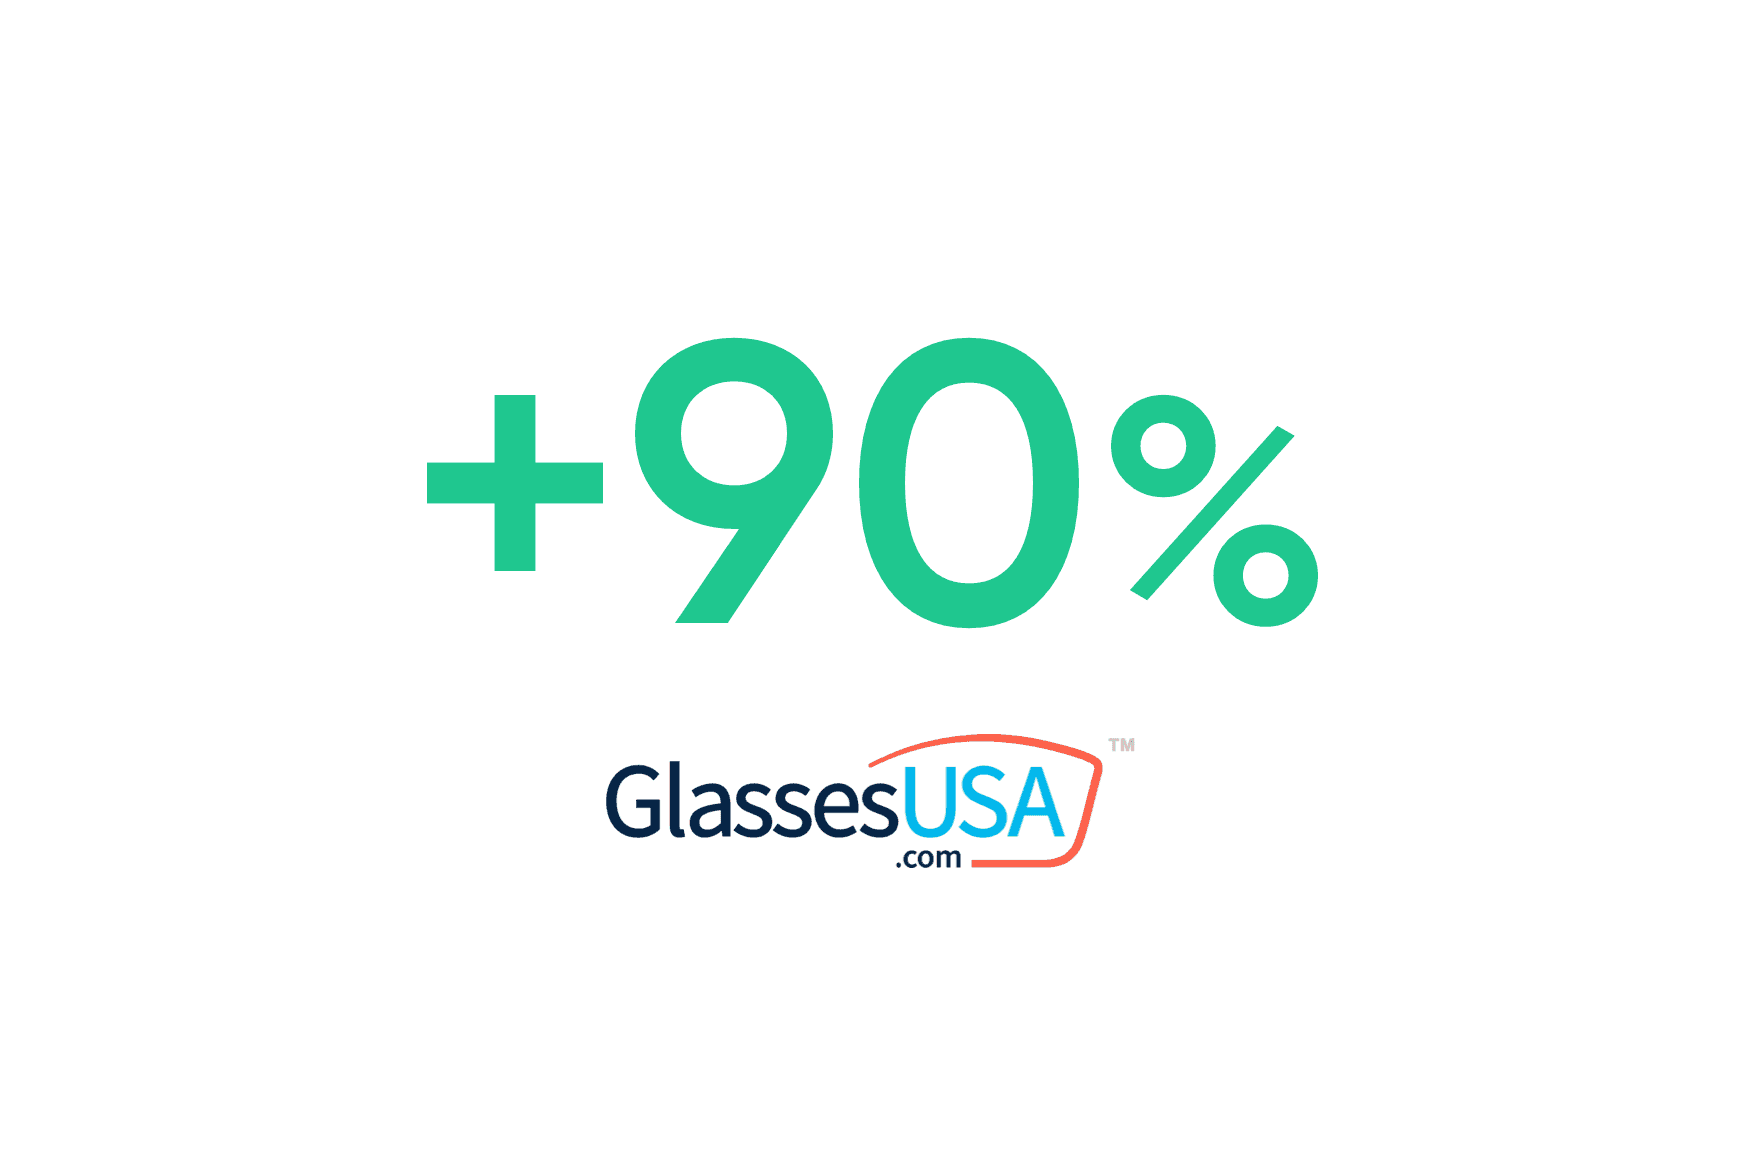 Glasses USA : Augmentation du taux de collecte à 90 %.